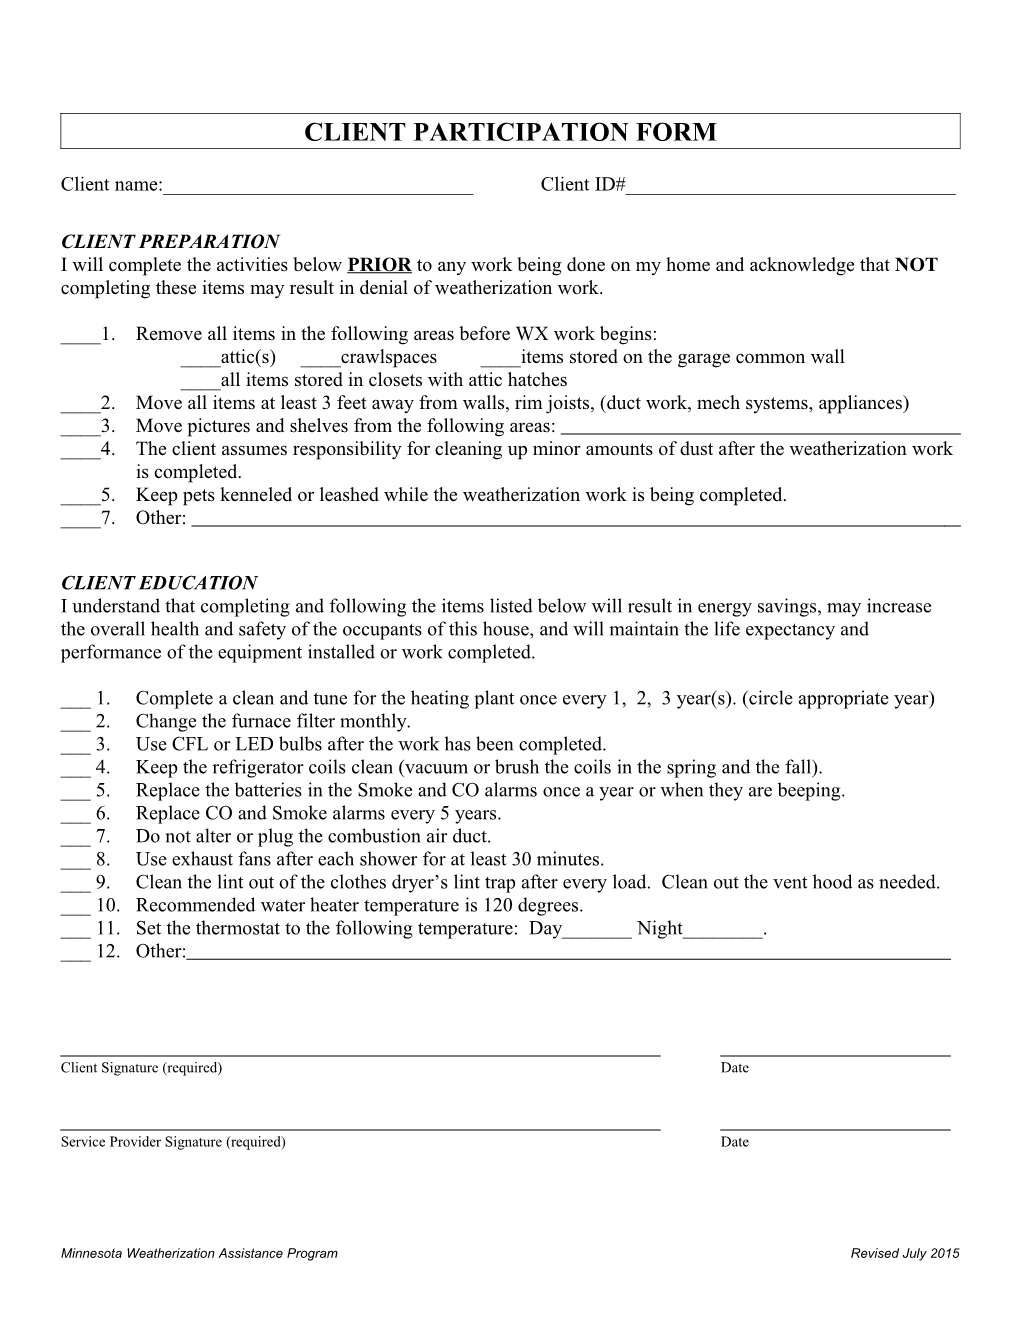 Client Participation Form